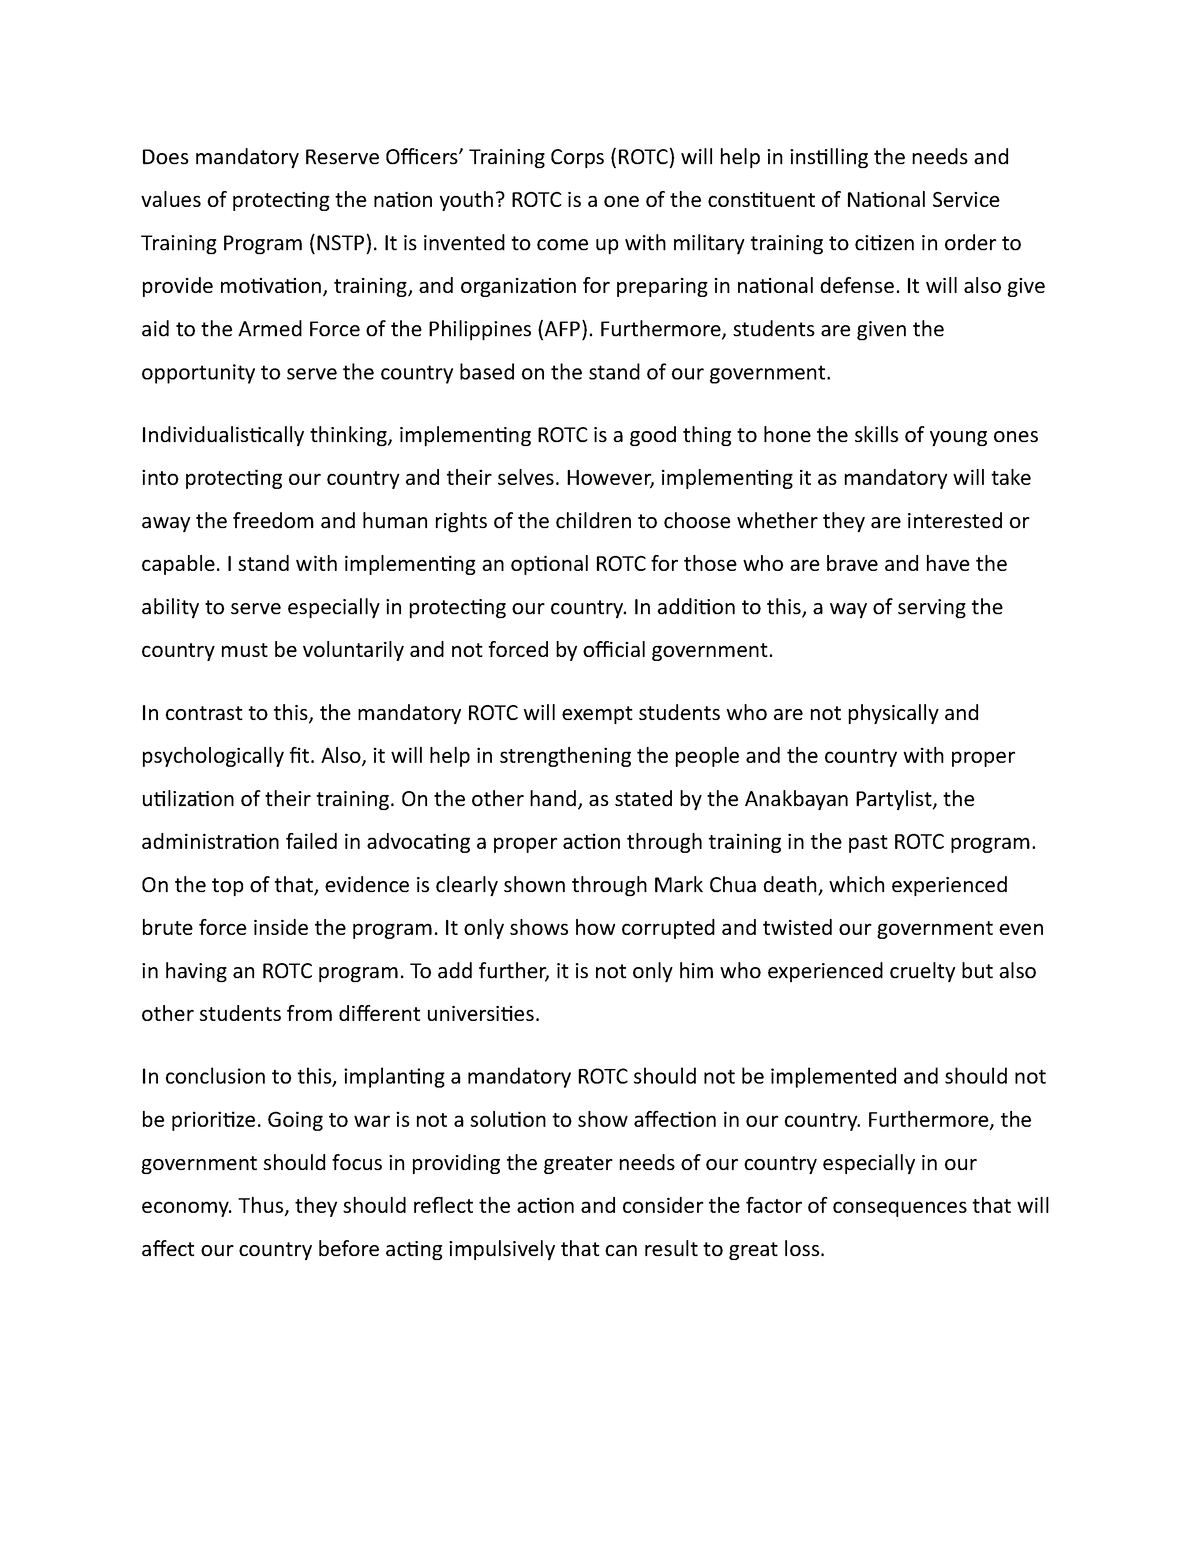 thesis statement about mandatory rotc